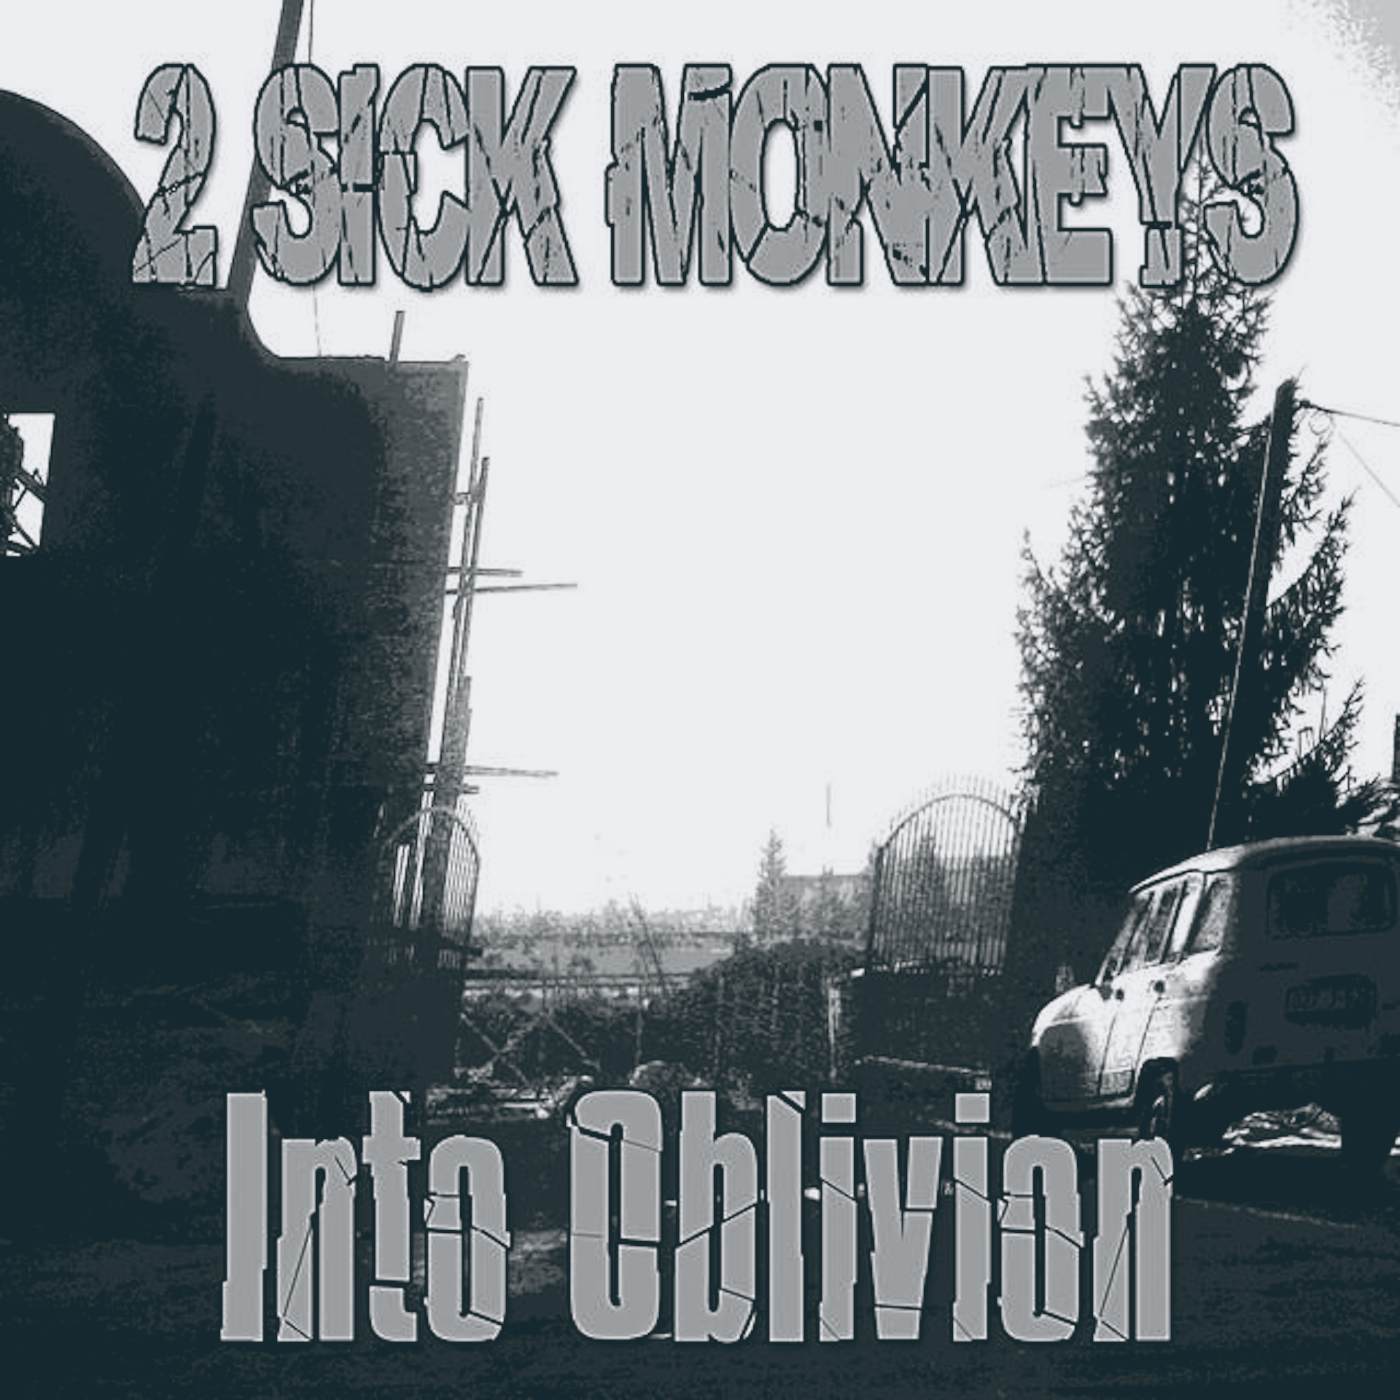 2 Sick Monkeys